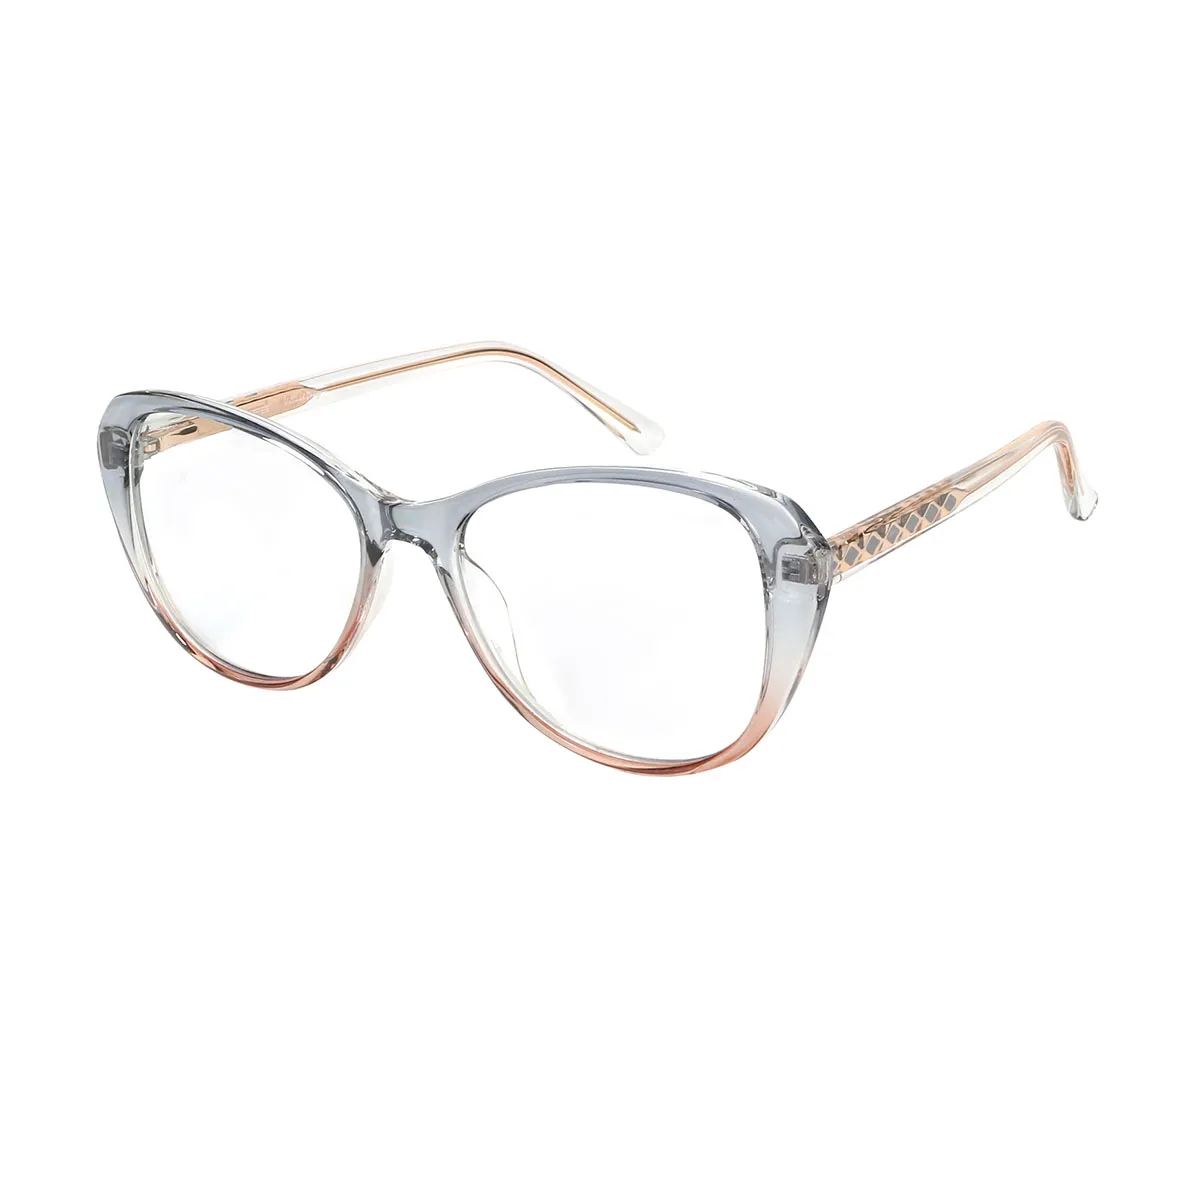 Elma - Cat-eye  Glasses for Women